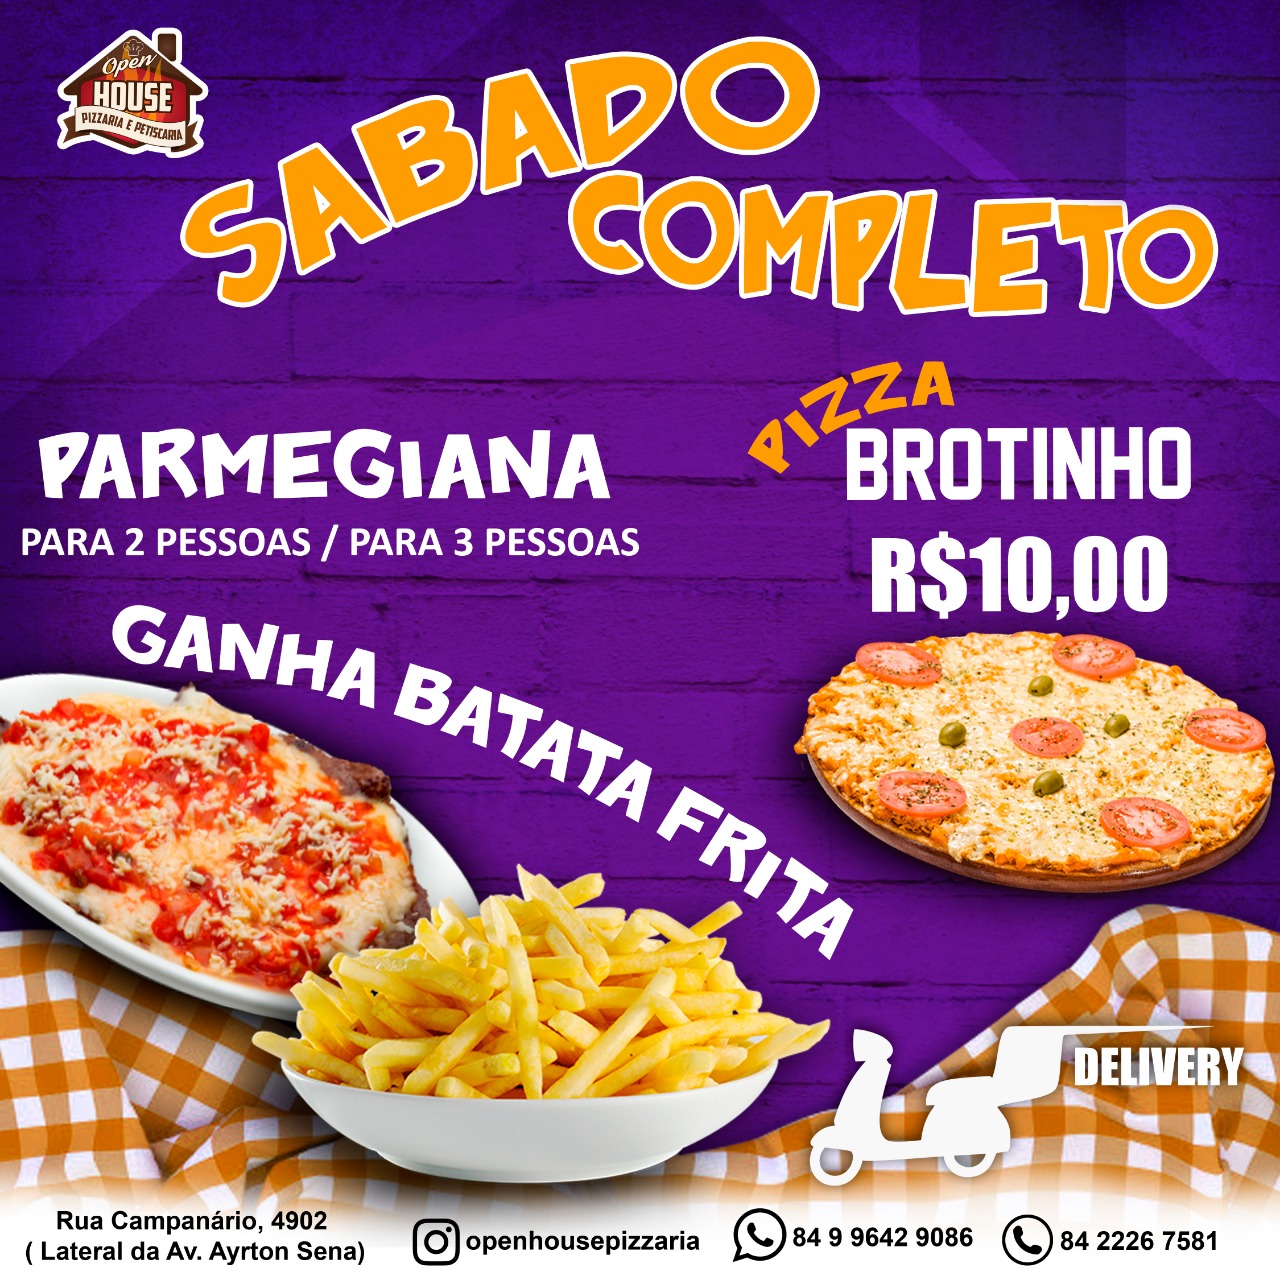 Promoção: Sábado Completo Pizza Brotinho por apenas 10,00